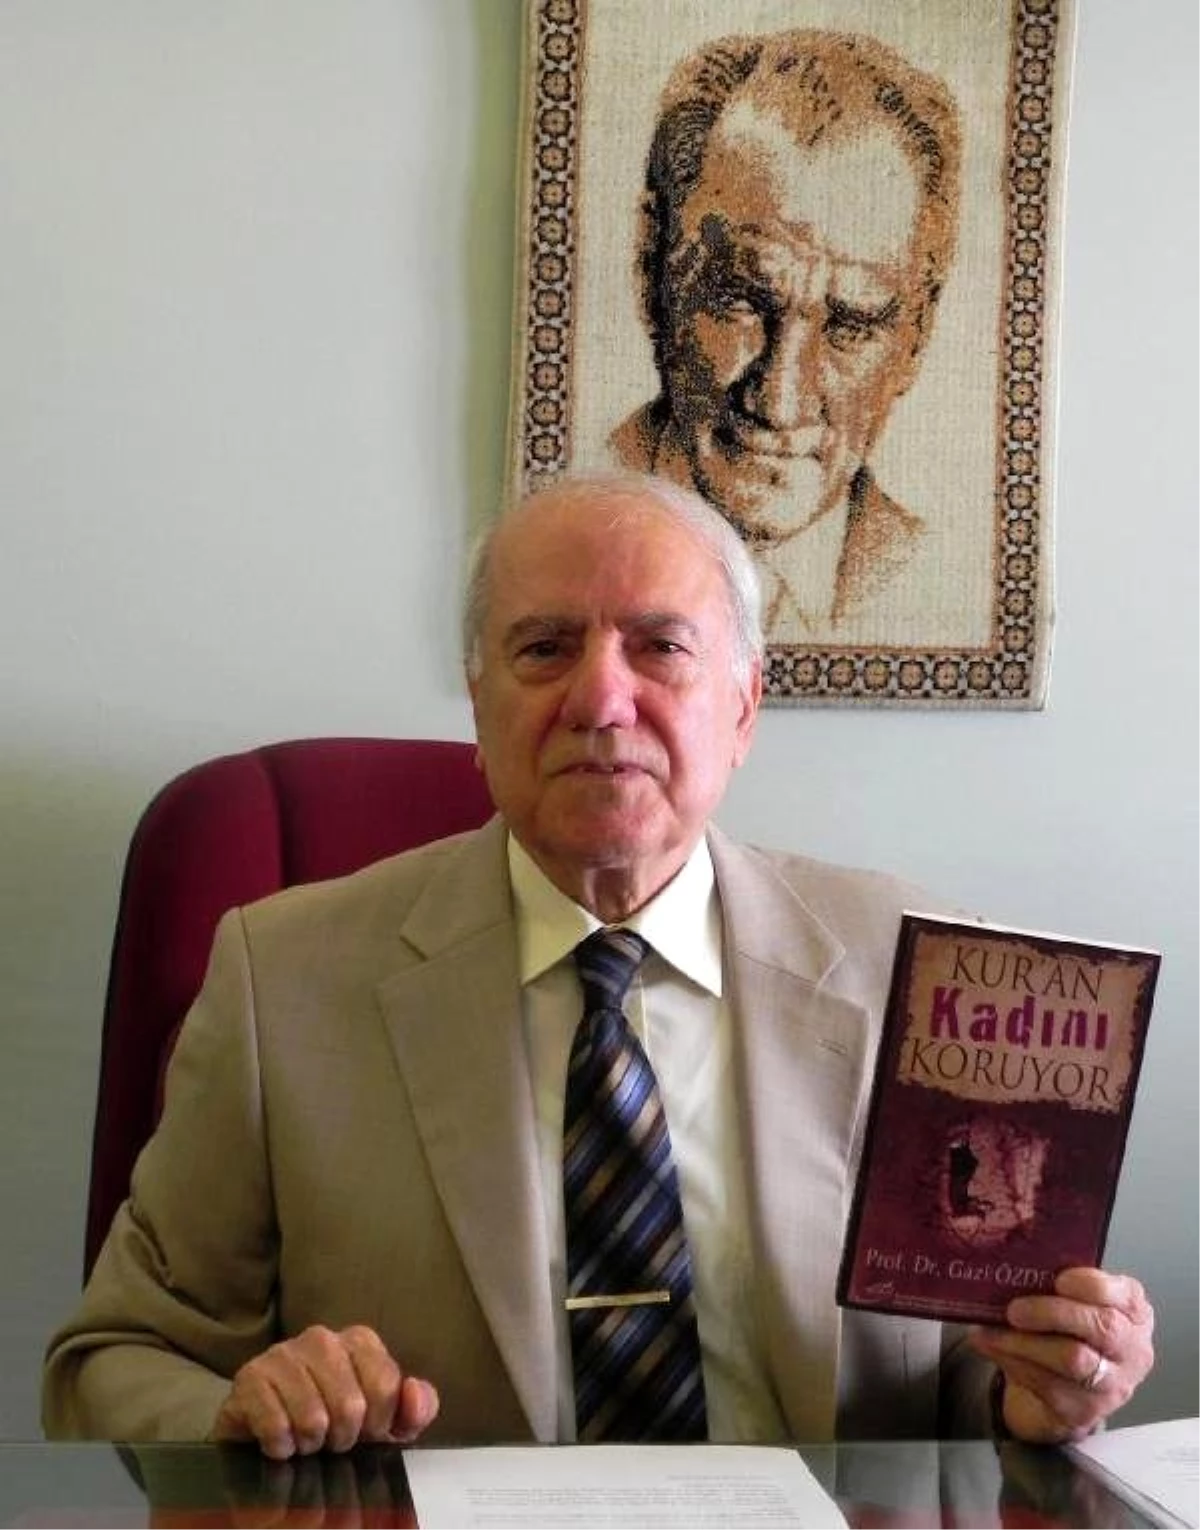 Emekli Nöroloji Profesörü Özdemir, \'Kuran Kadını Koruyor\' Adlı Kitabını Tanıttı